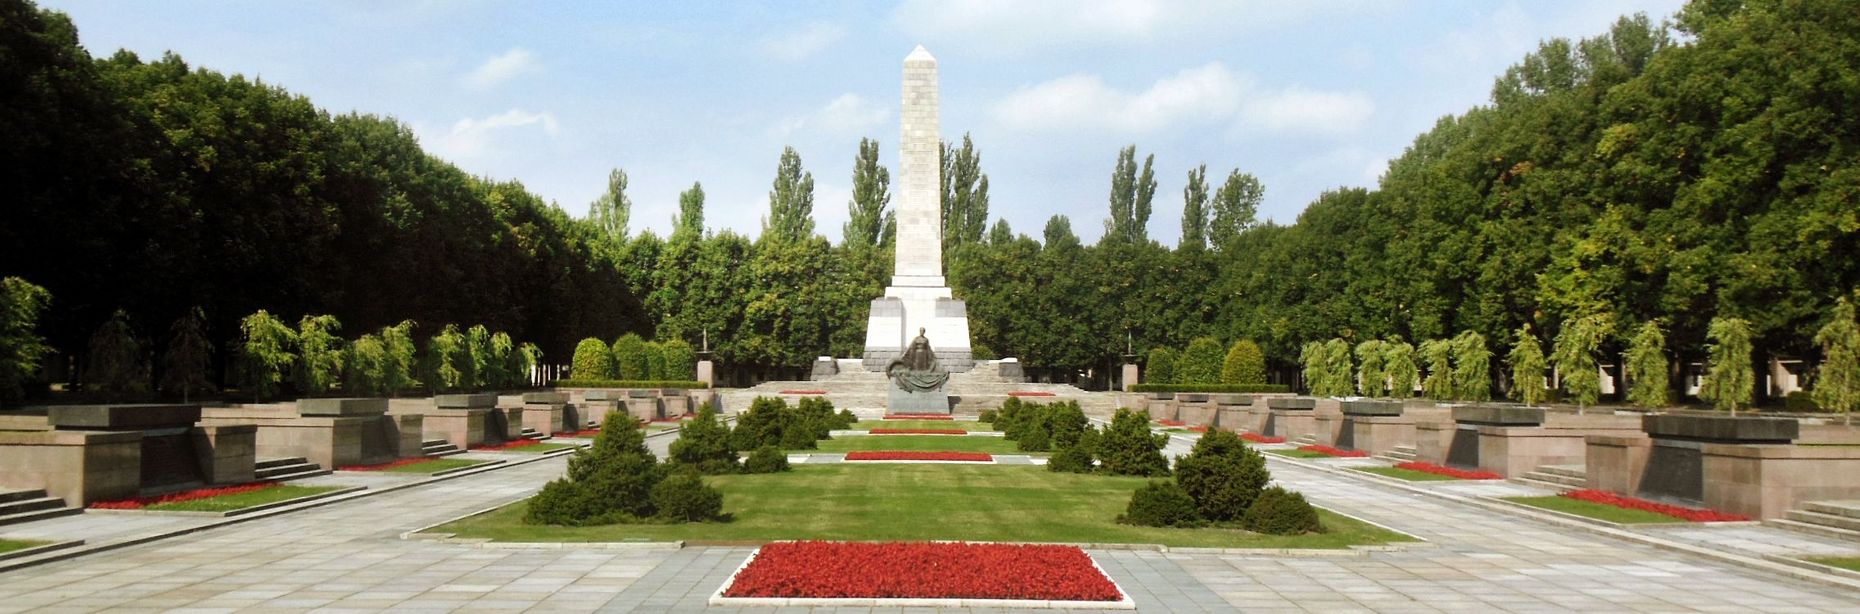 Das Monument des Sowjetischen Ehrenmals in Schönholz